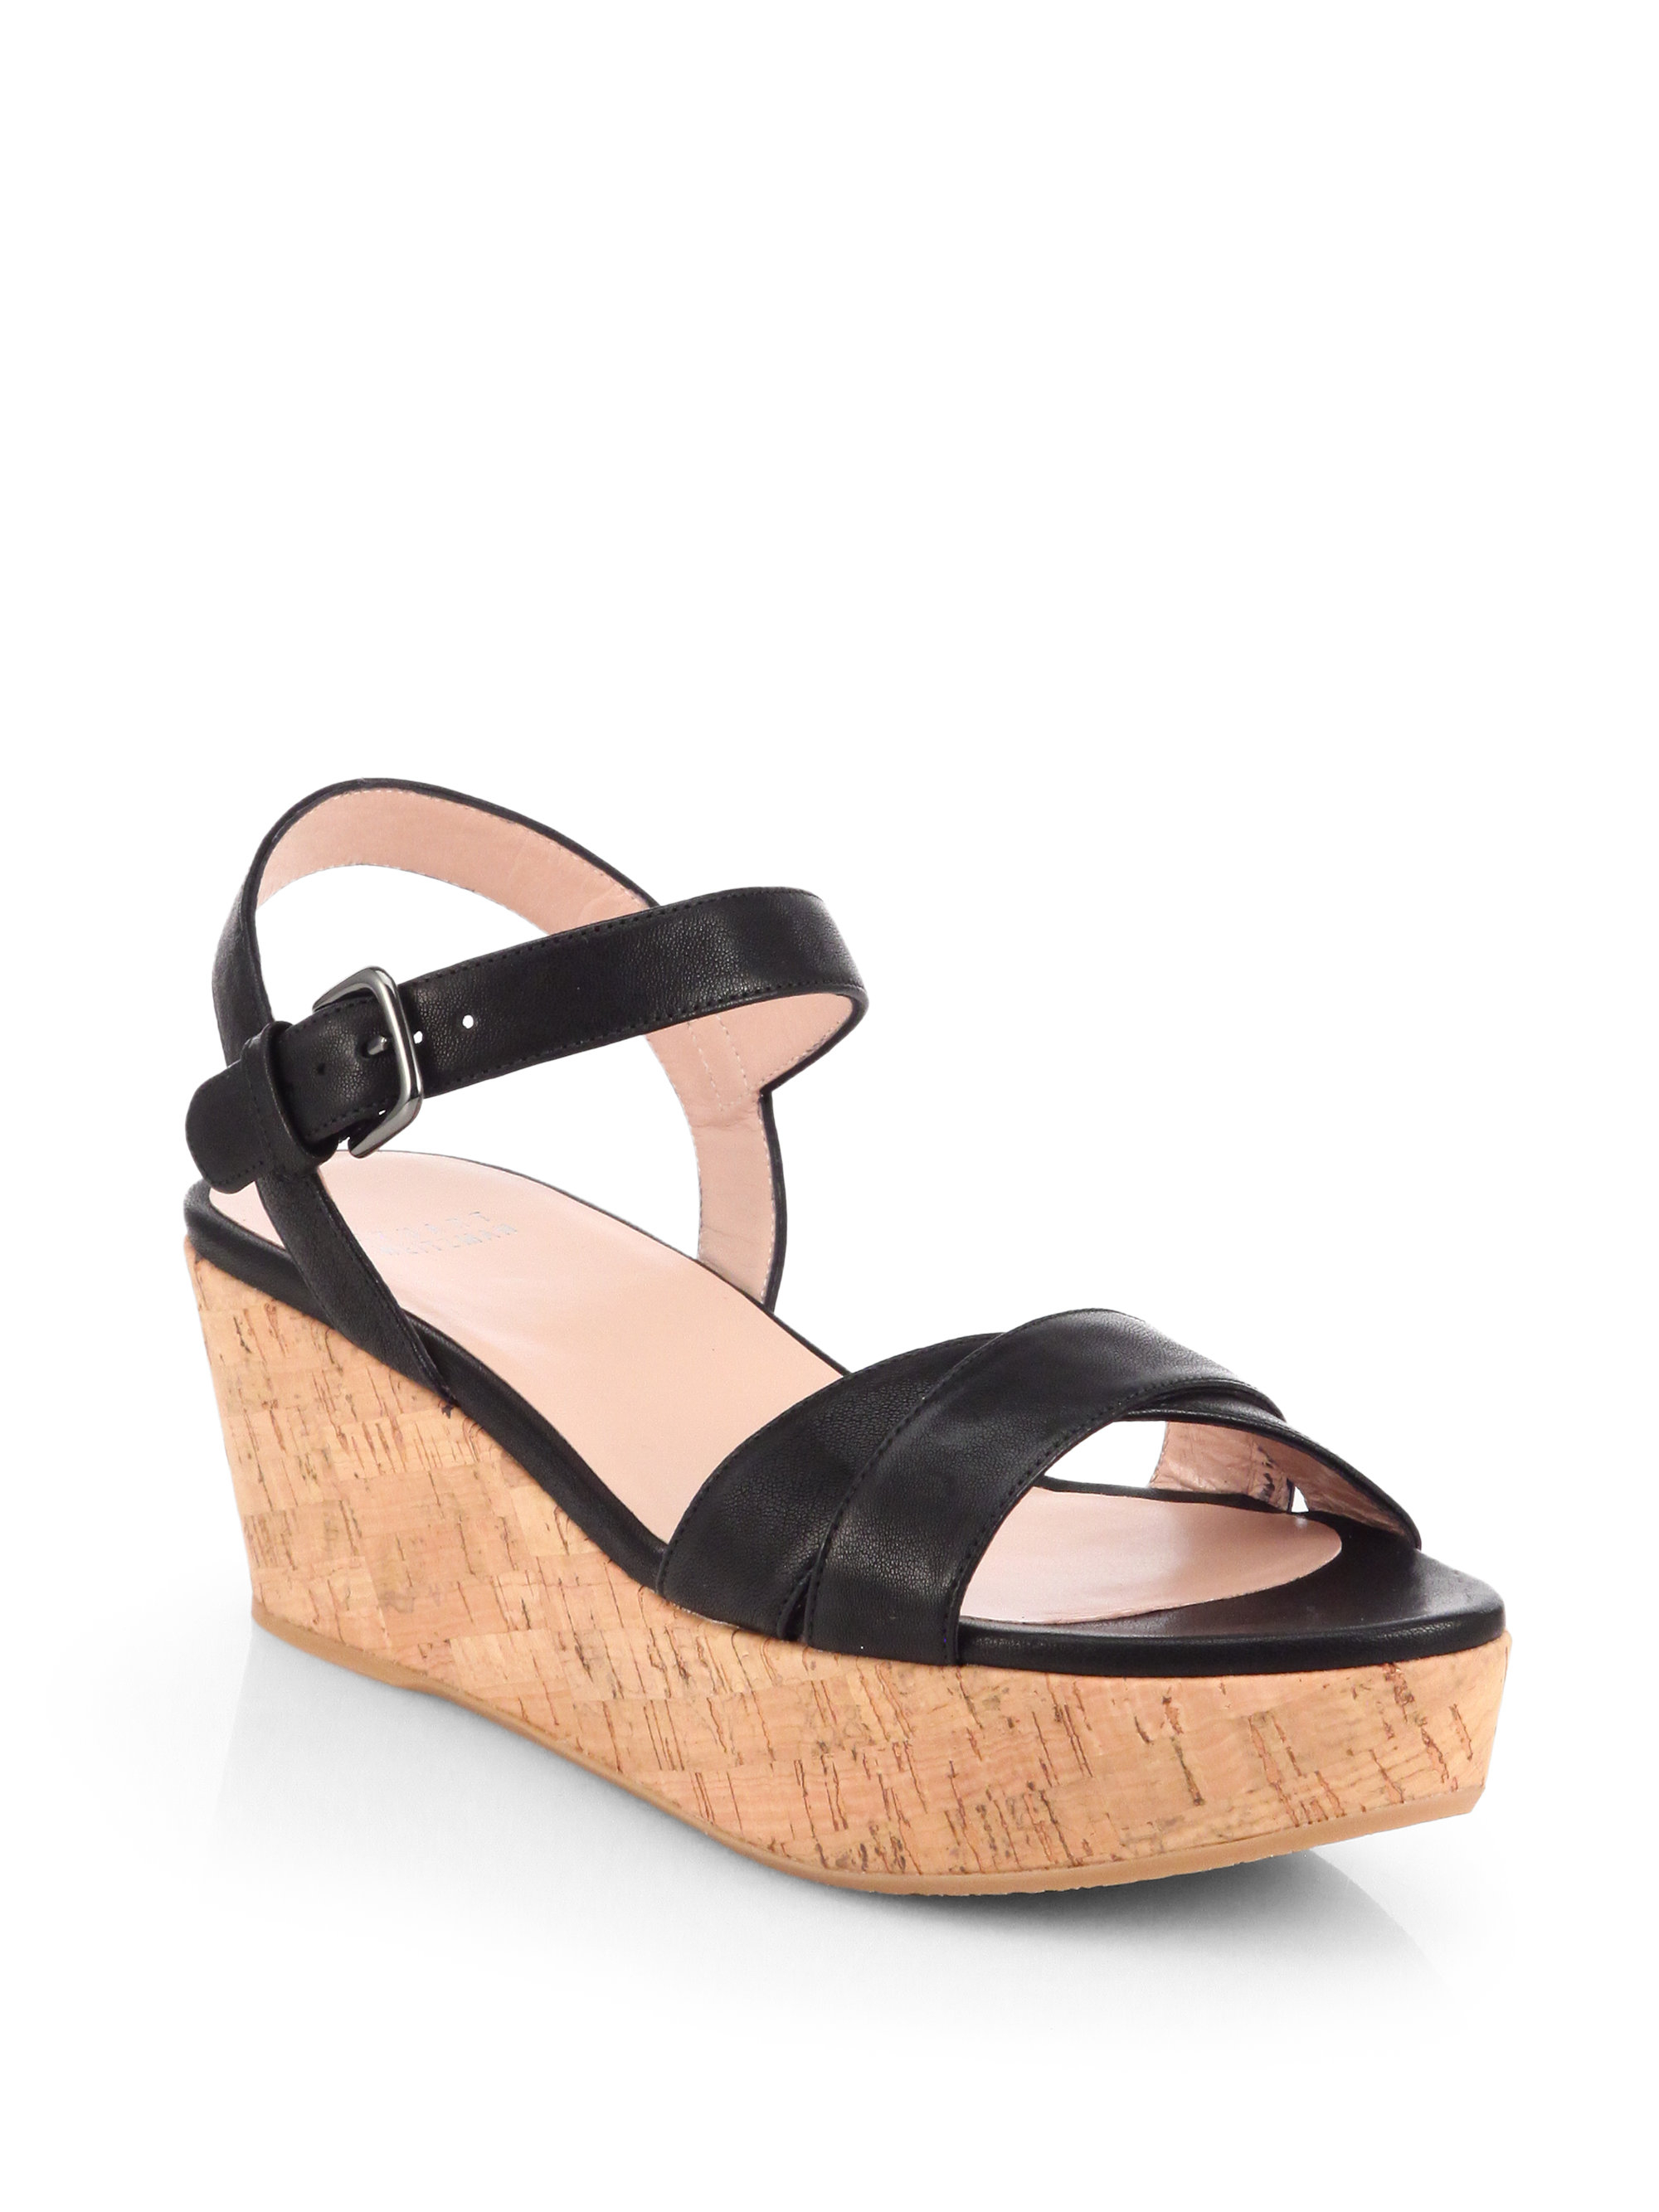 black cork platform sandals